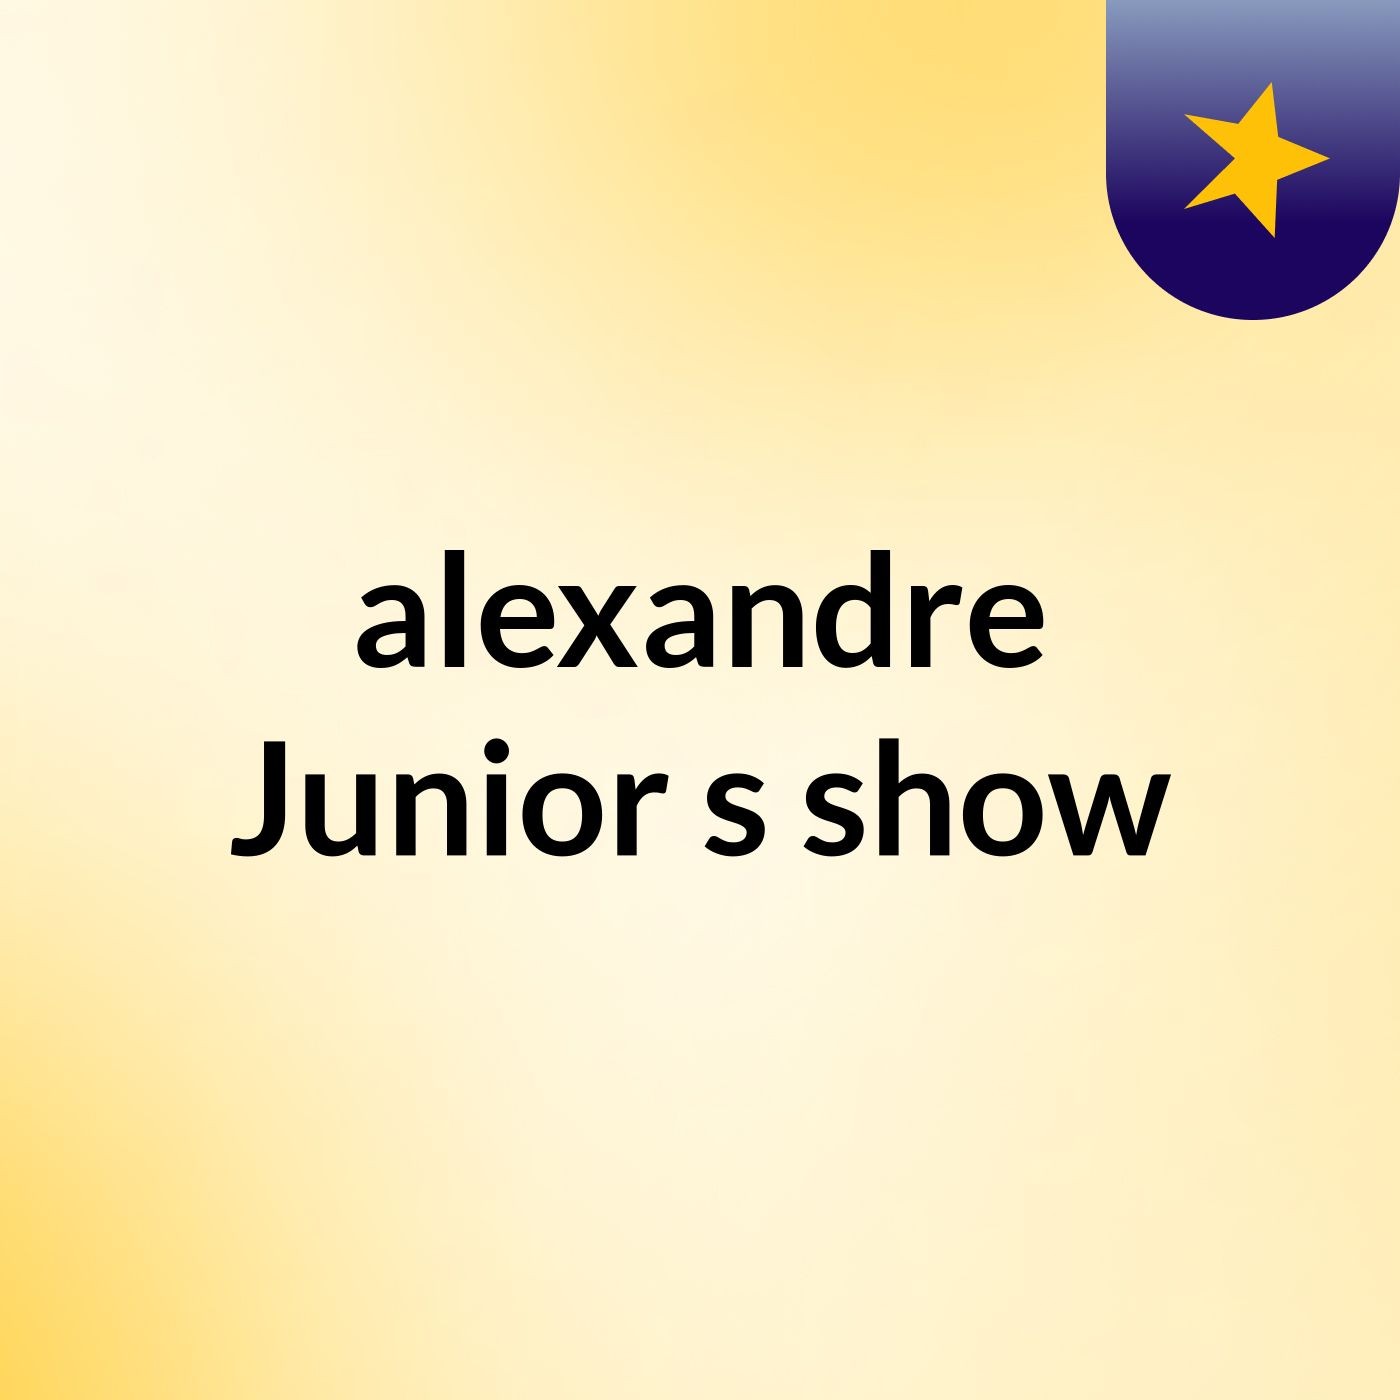 alexandre Junior's show